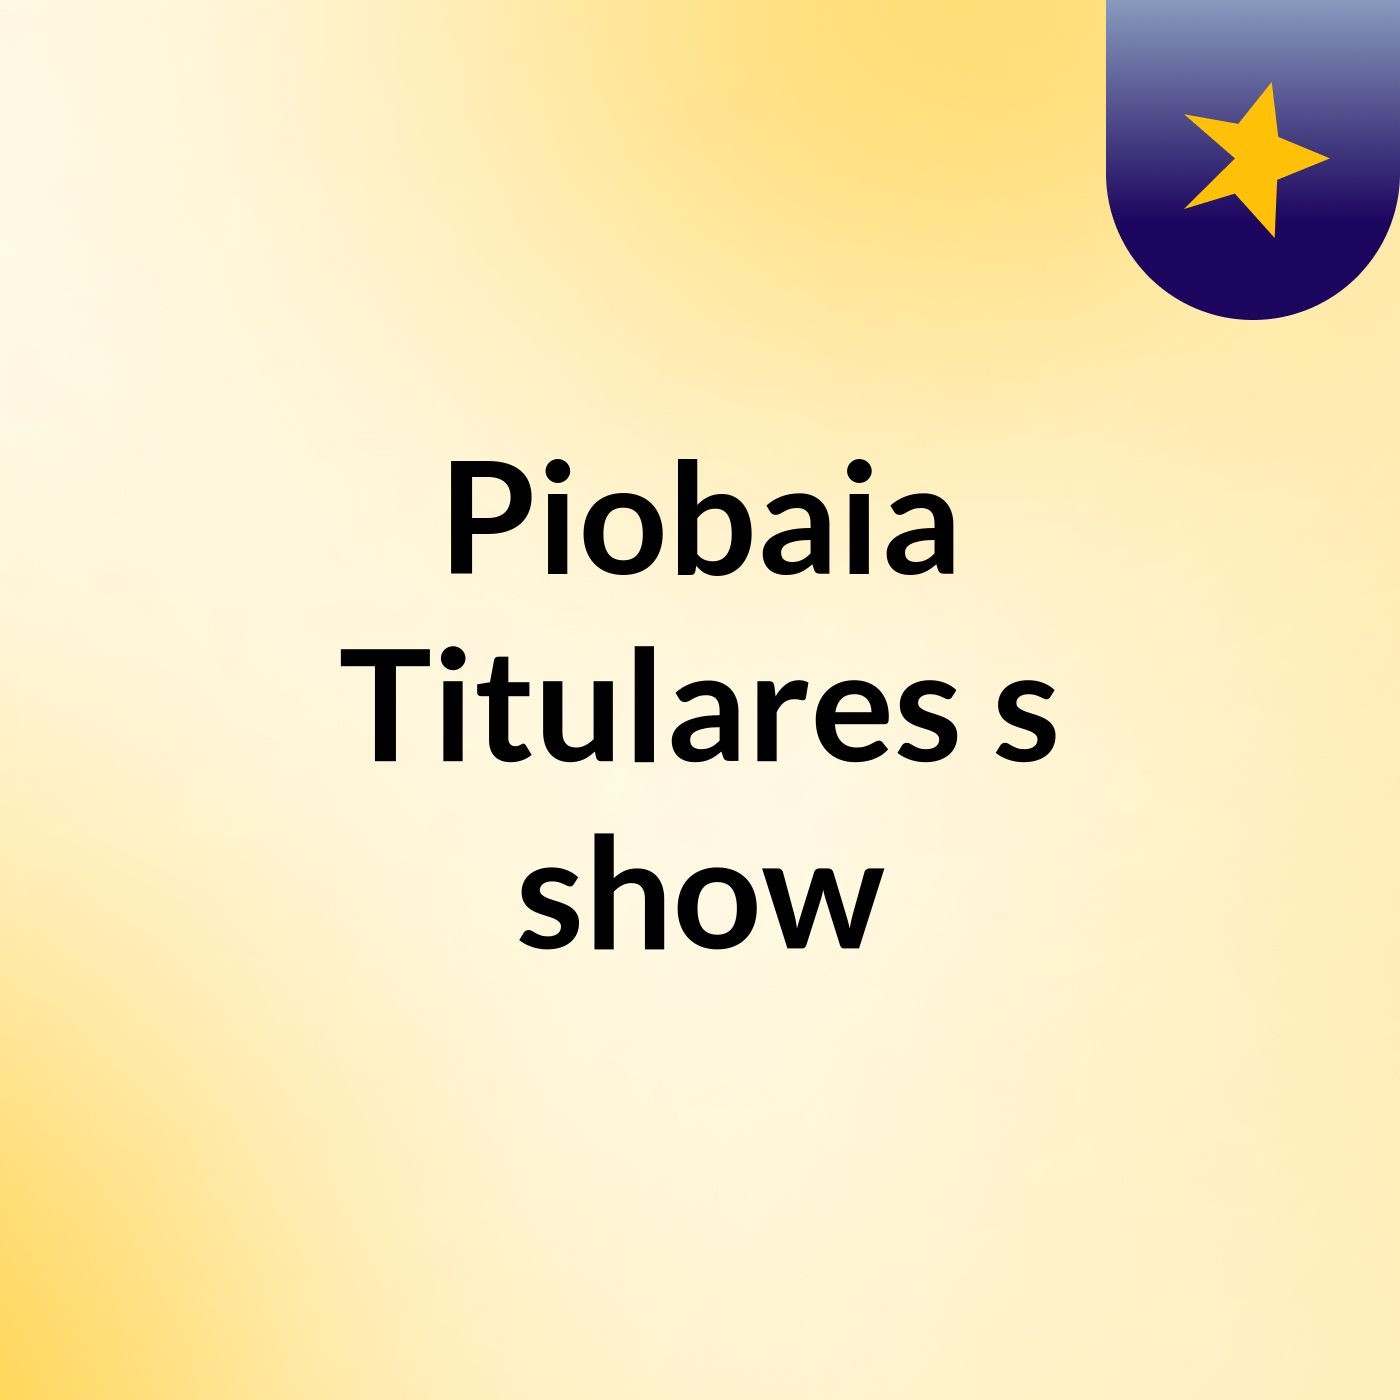 Piobaia Titulares's show